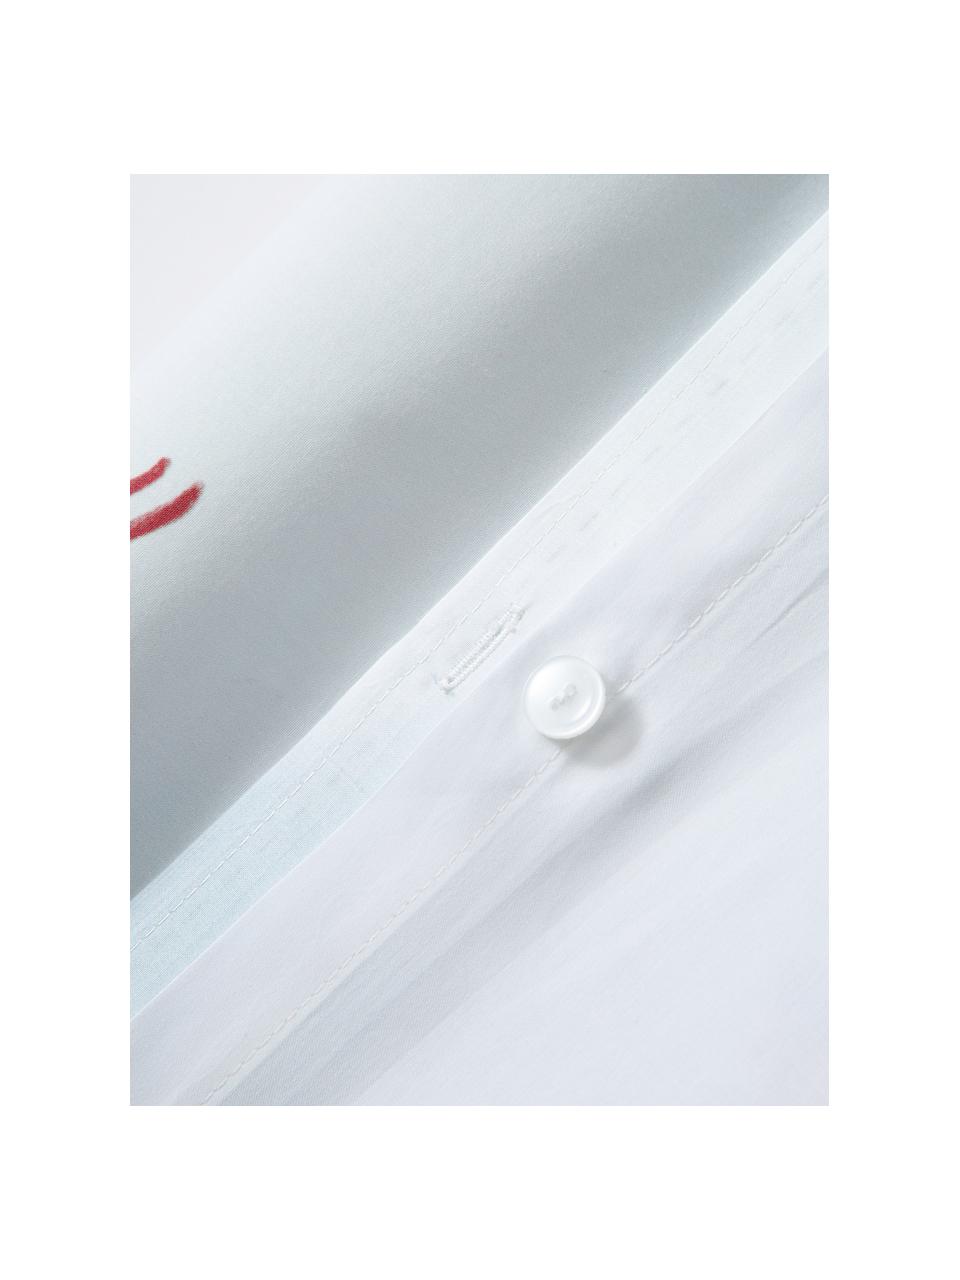 Copripiumino di design in cotone percalle Ski di Kera Till, Azzurro, bianco, Larg. 200 x Lung. 200 cm